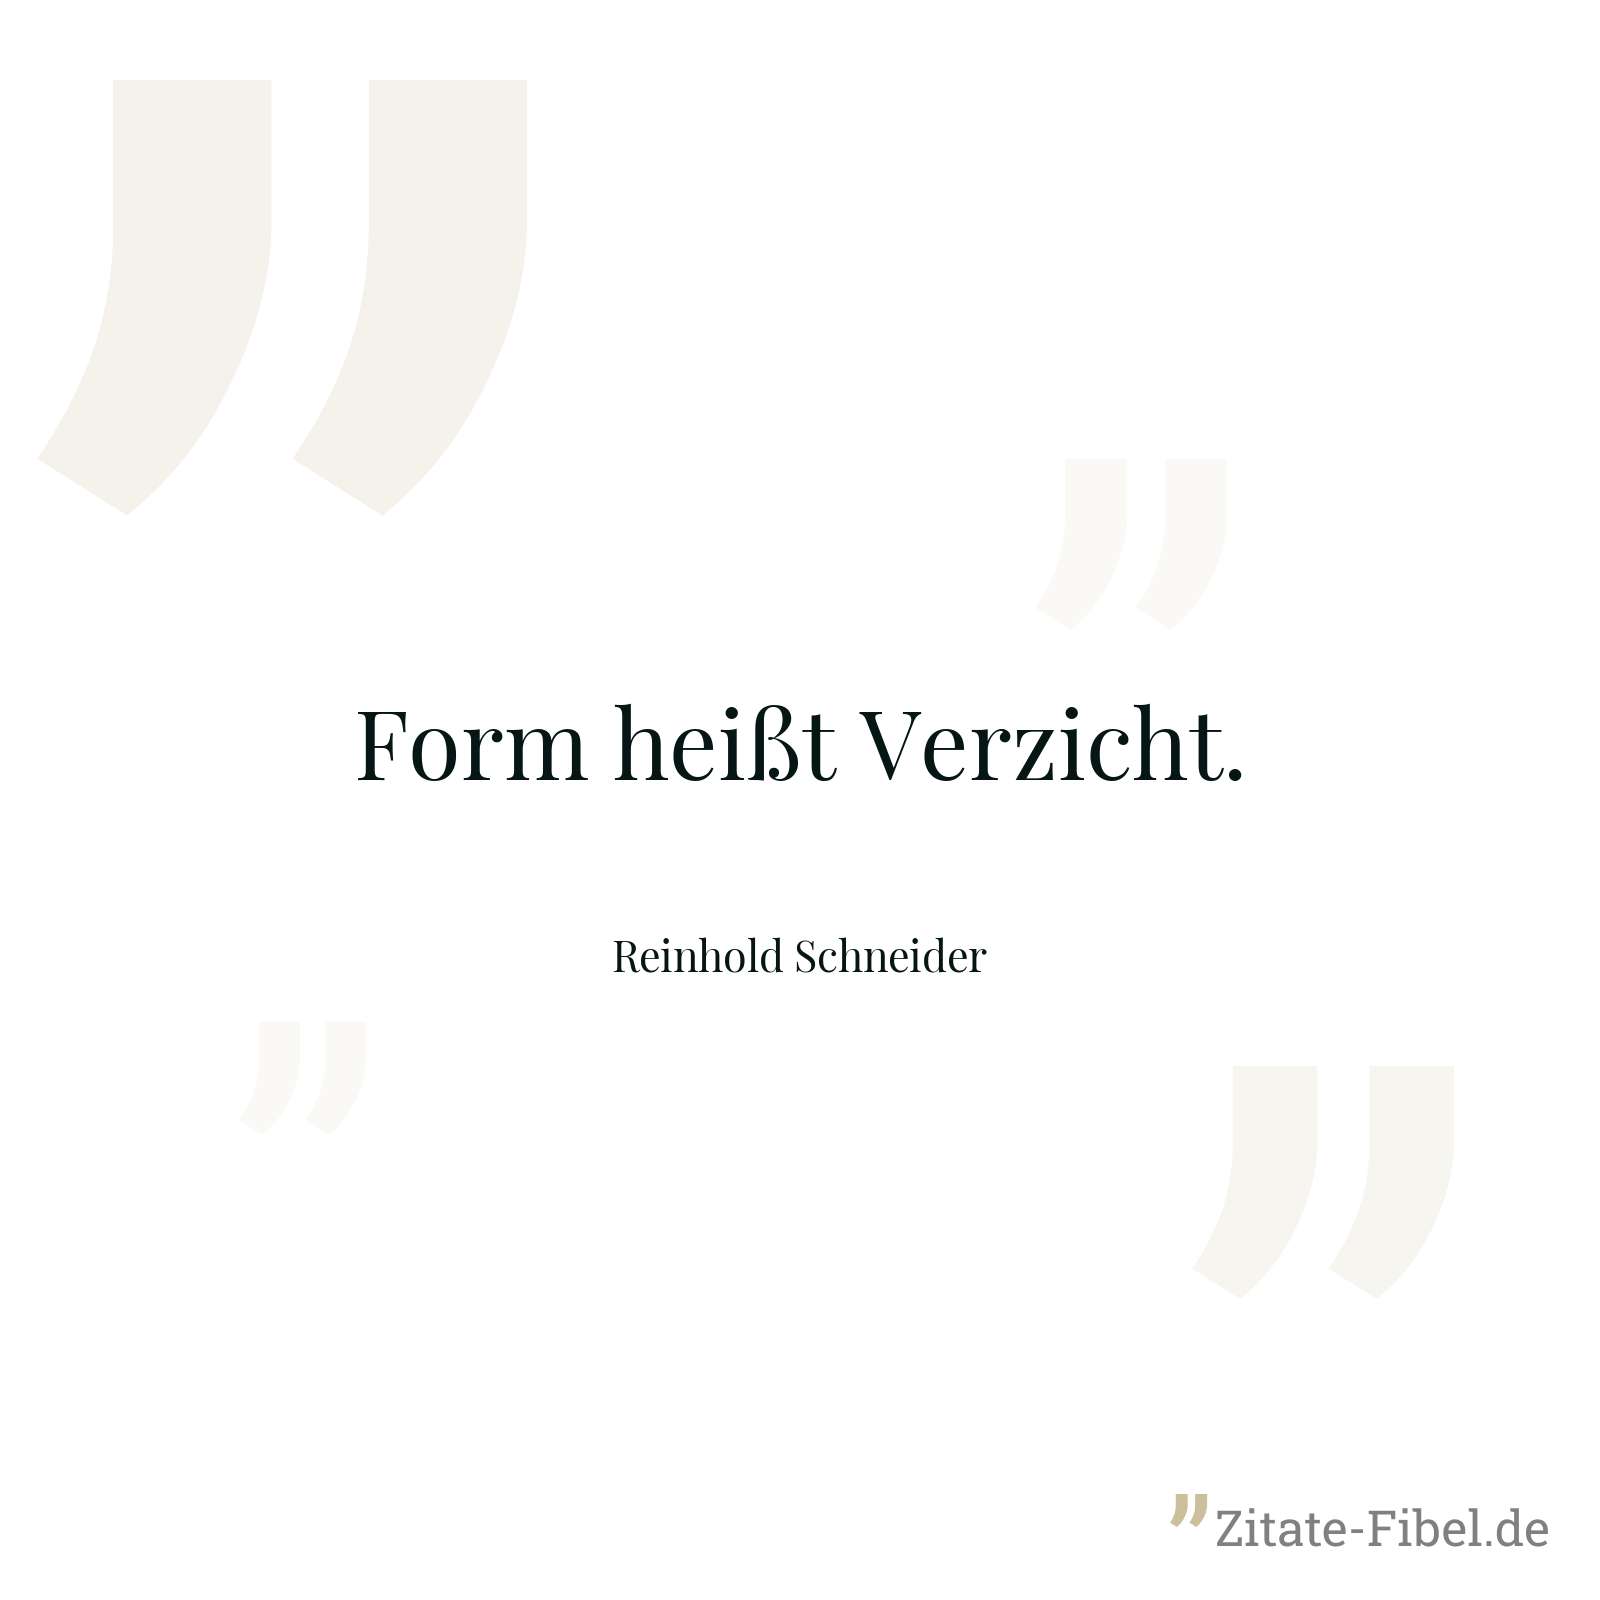 Form heißt Verzicht. - Reinhold Schneider